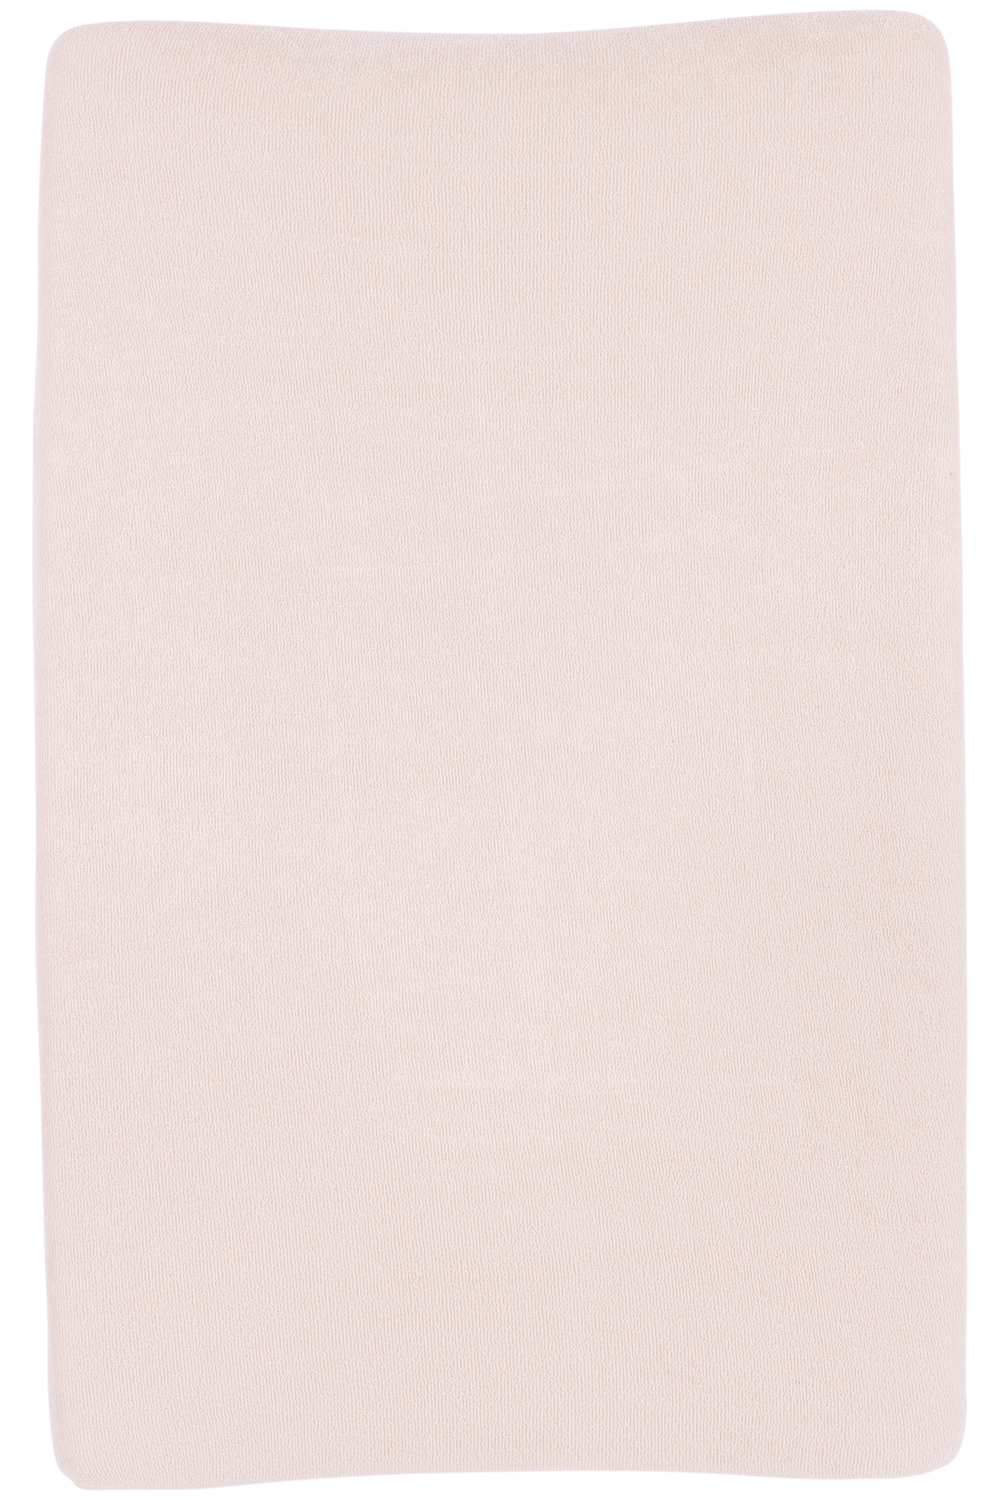 Wickelauflagenbezug frottee Uni - soft pink - 50x70cm